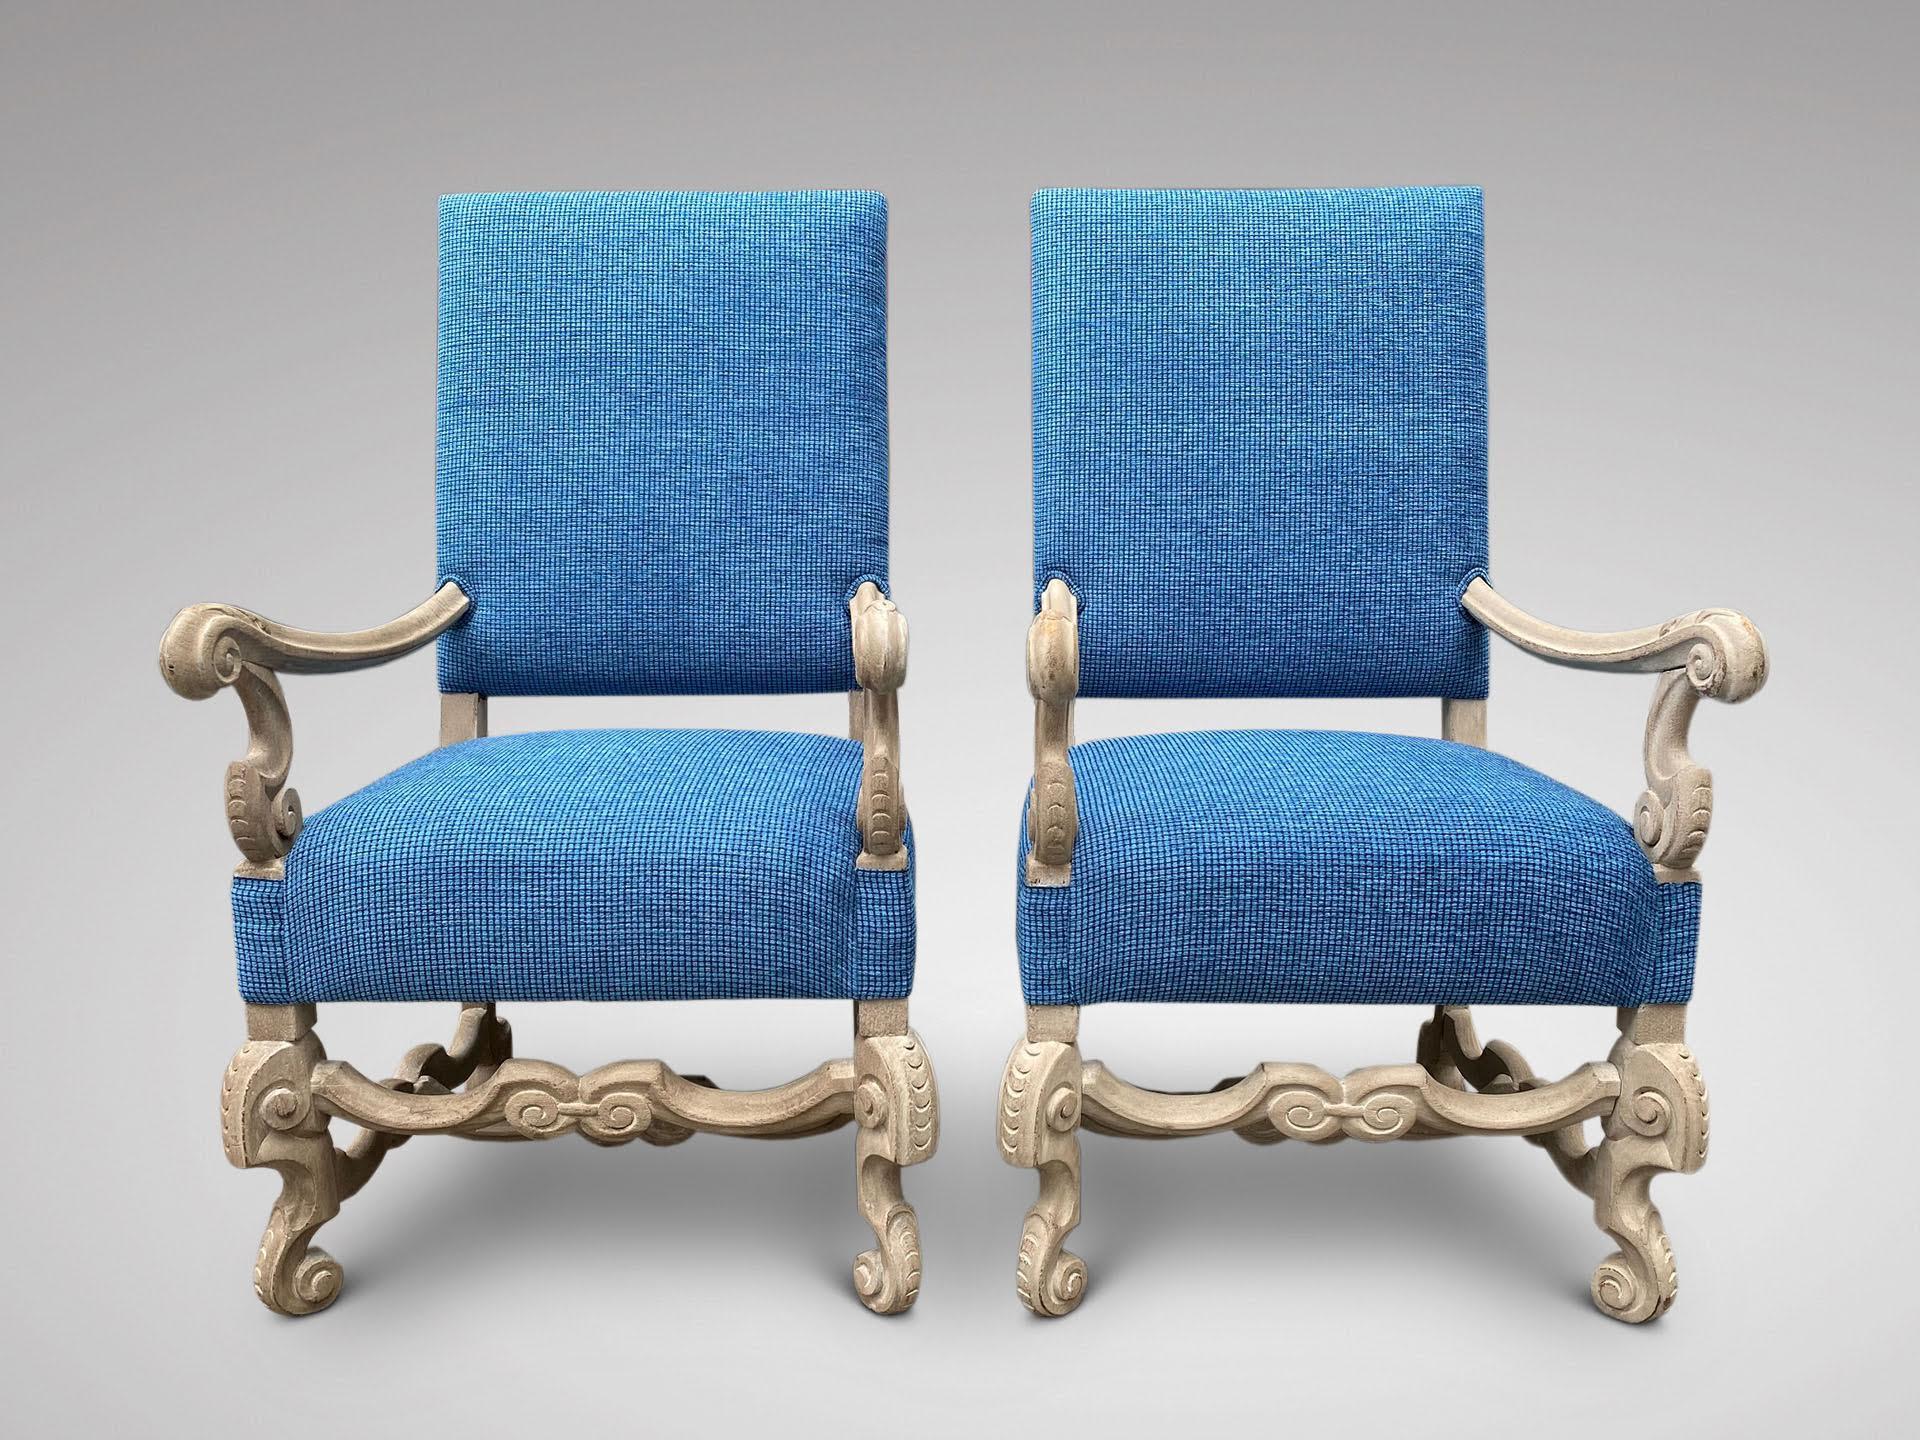 Une belle paire de fauteuils hollandais anciens du 19ème siècle, avec un cadre en bois de noyer sculpté à la main et un haut dossier rembourré. Les accoudoirs sont en forme et reposent sur des pieds sculptés en forme, avec des pieds en volute réunis